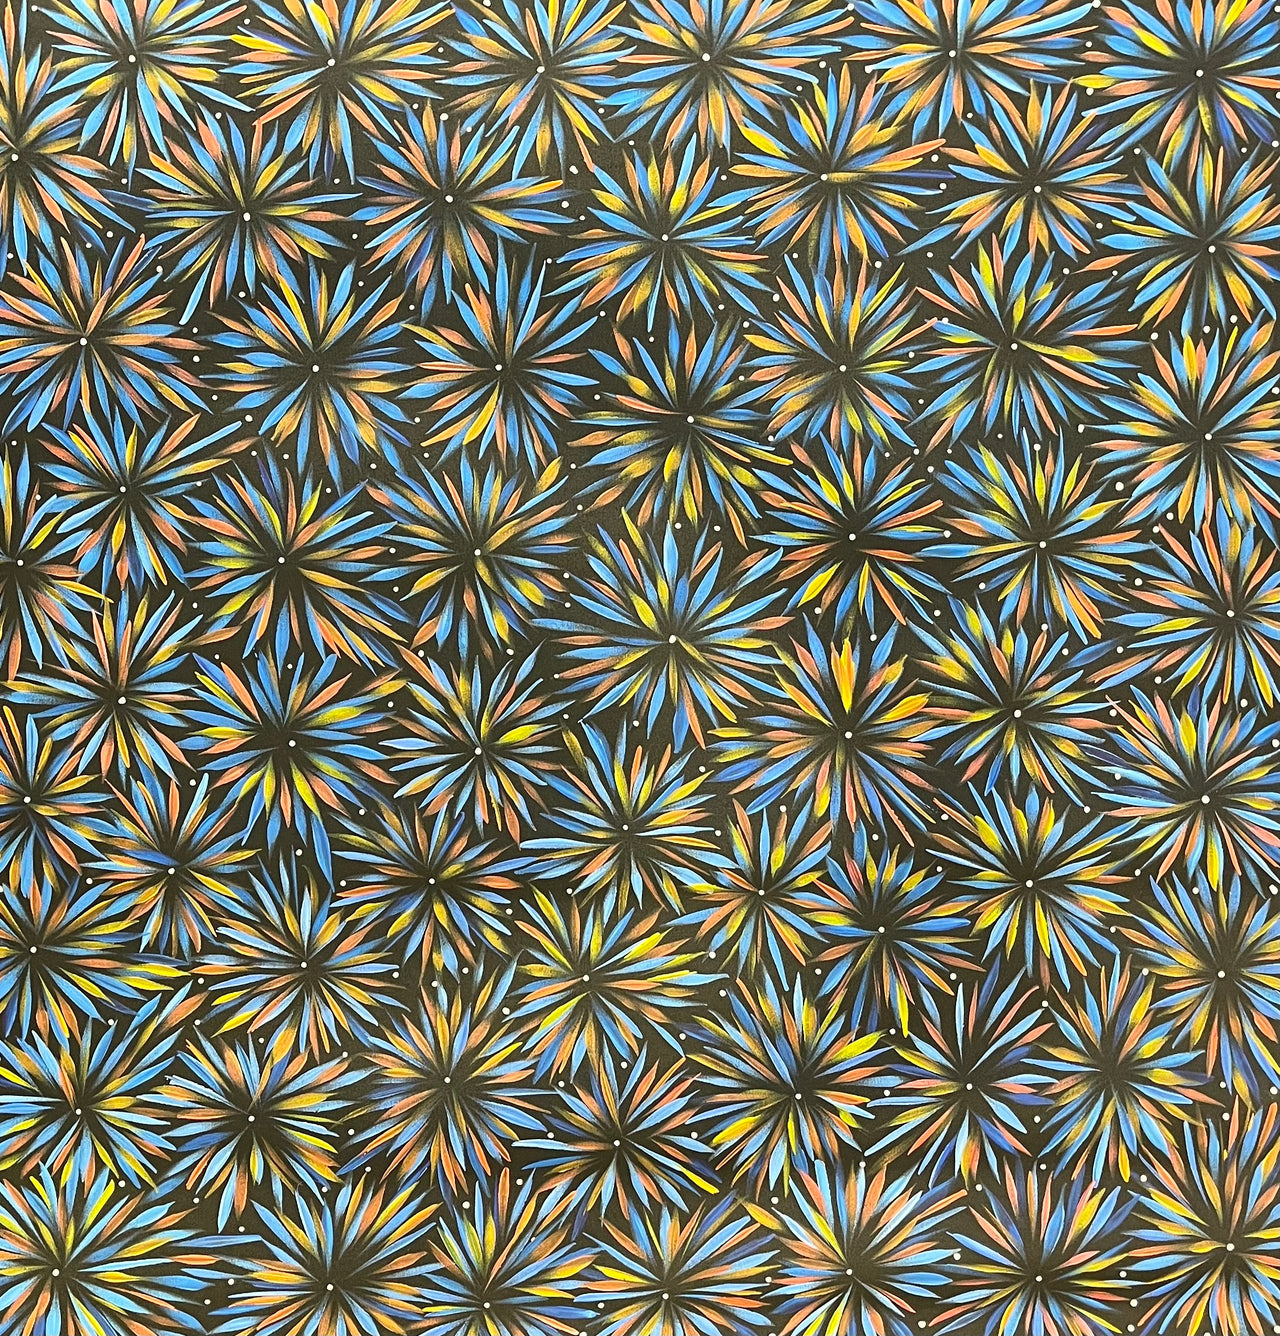 Margaret Scobie “Bush Medicine Leaves” 980 x 920 Aboriginal Art